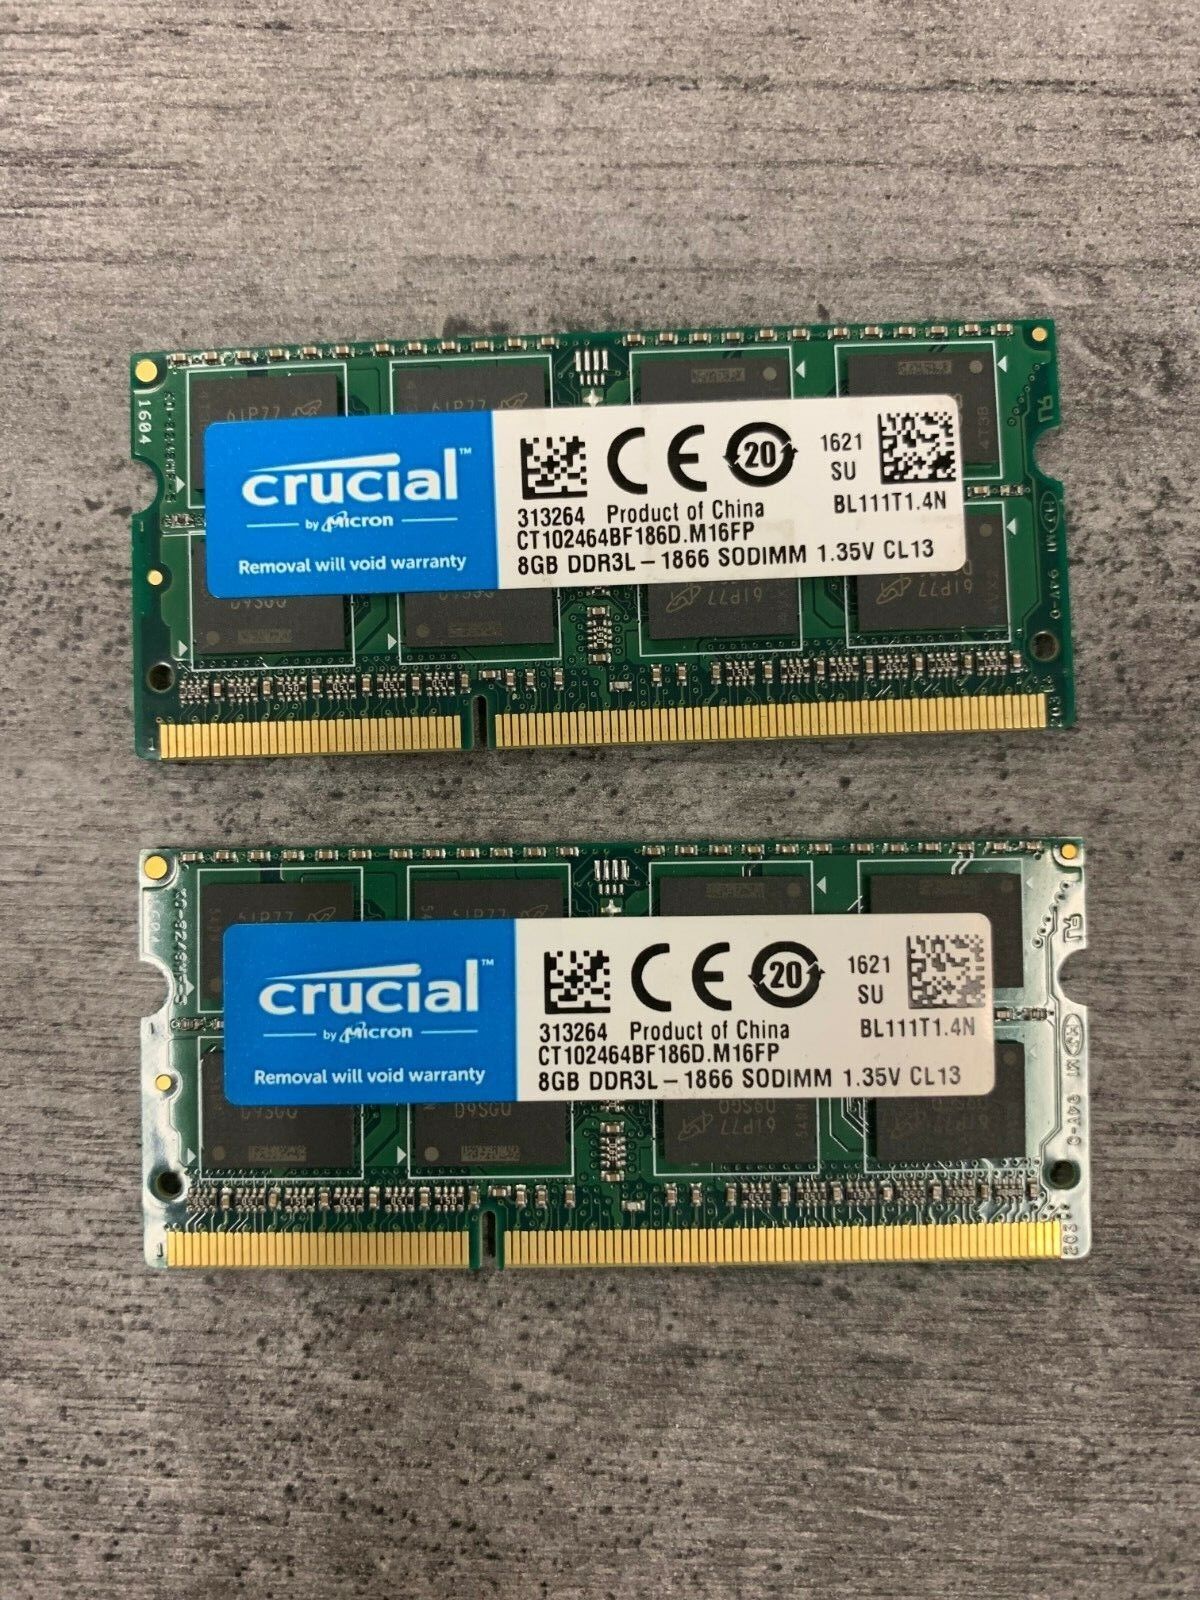 16GB (2 X 8GB ) PC3-12800S DDR3L/DDR3 SODIMM Laptop Memory - Major Brands Hynix DDR3L